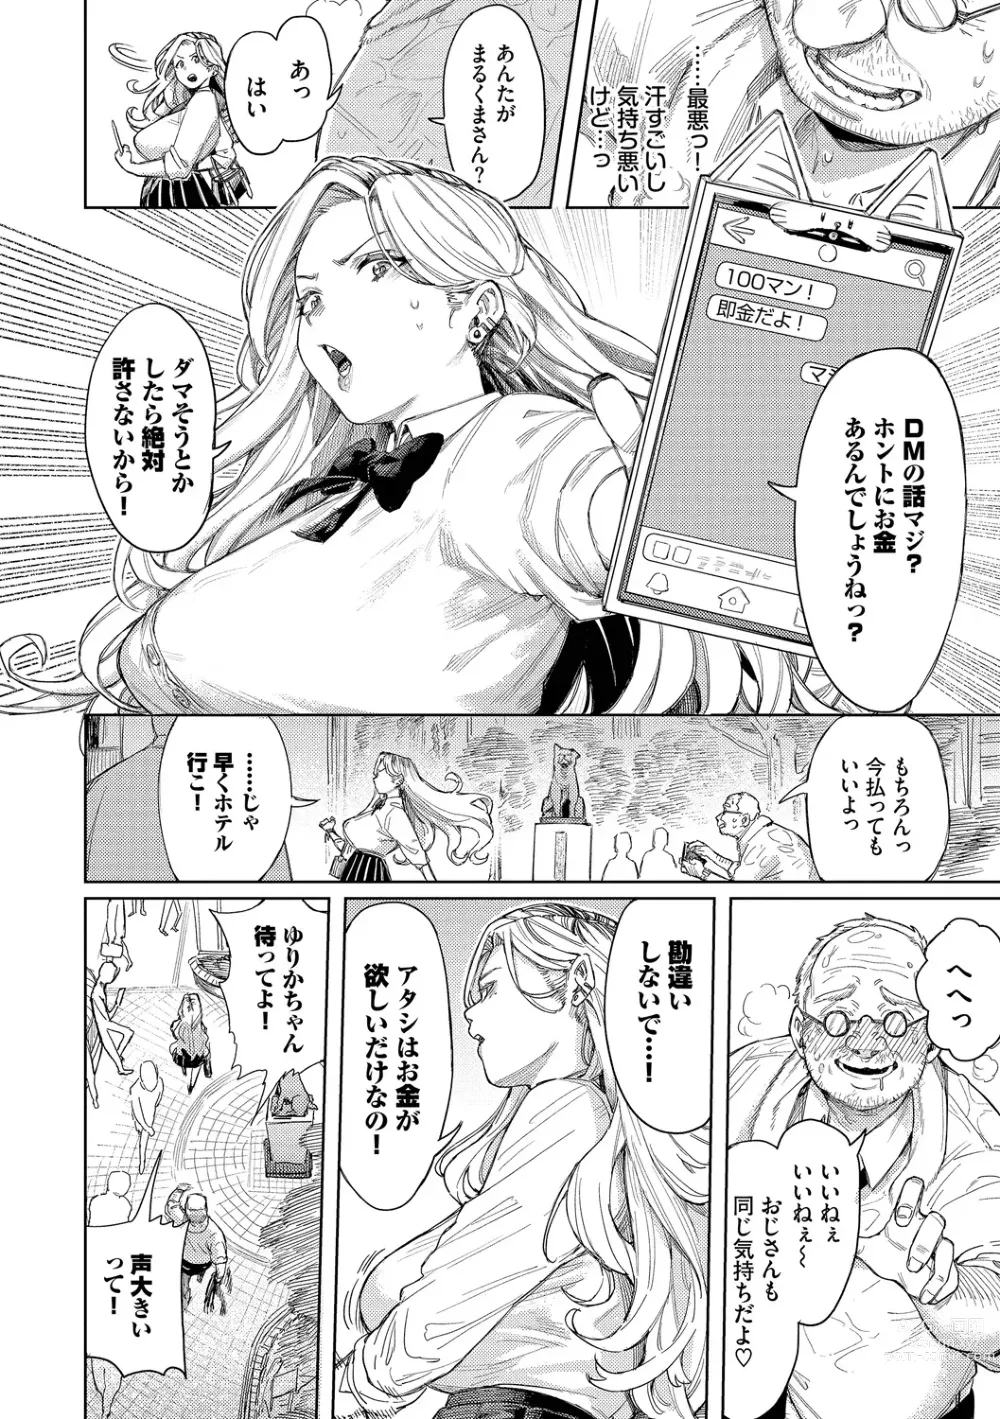 Page 4 of manga Mesuochi Showtime